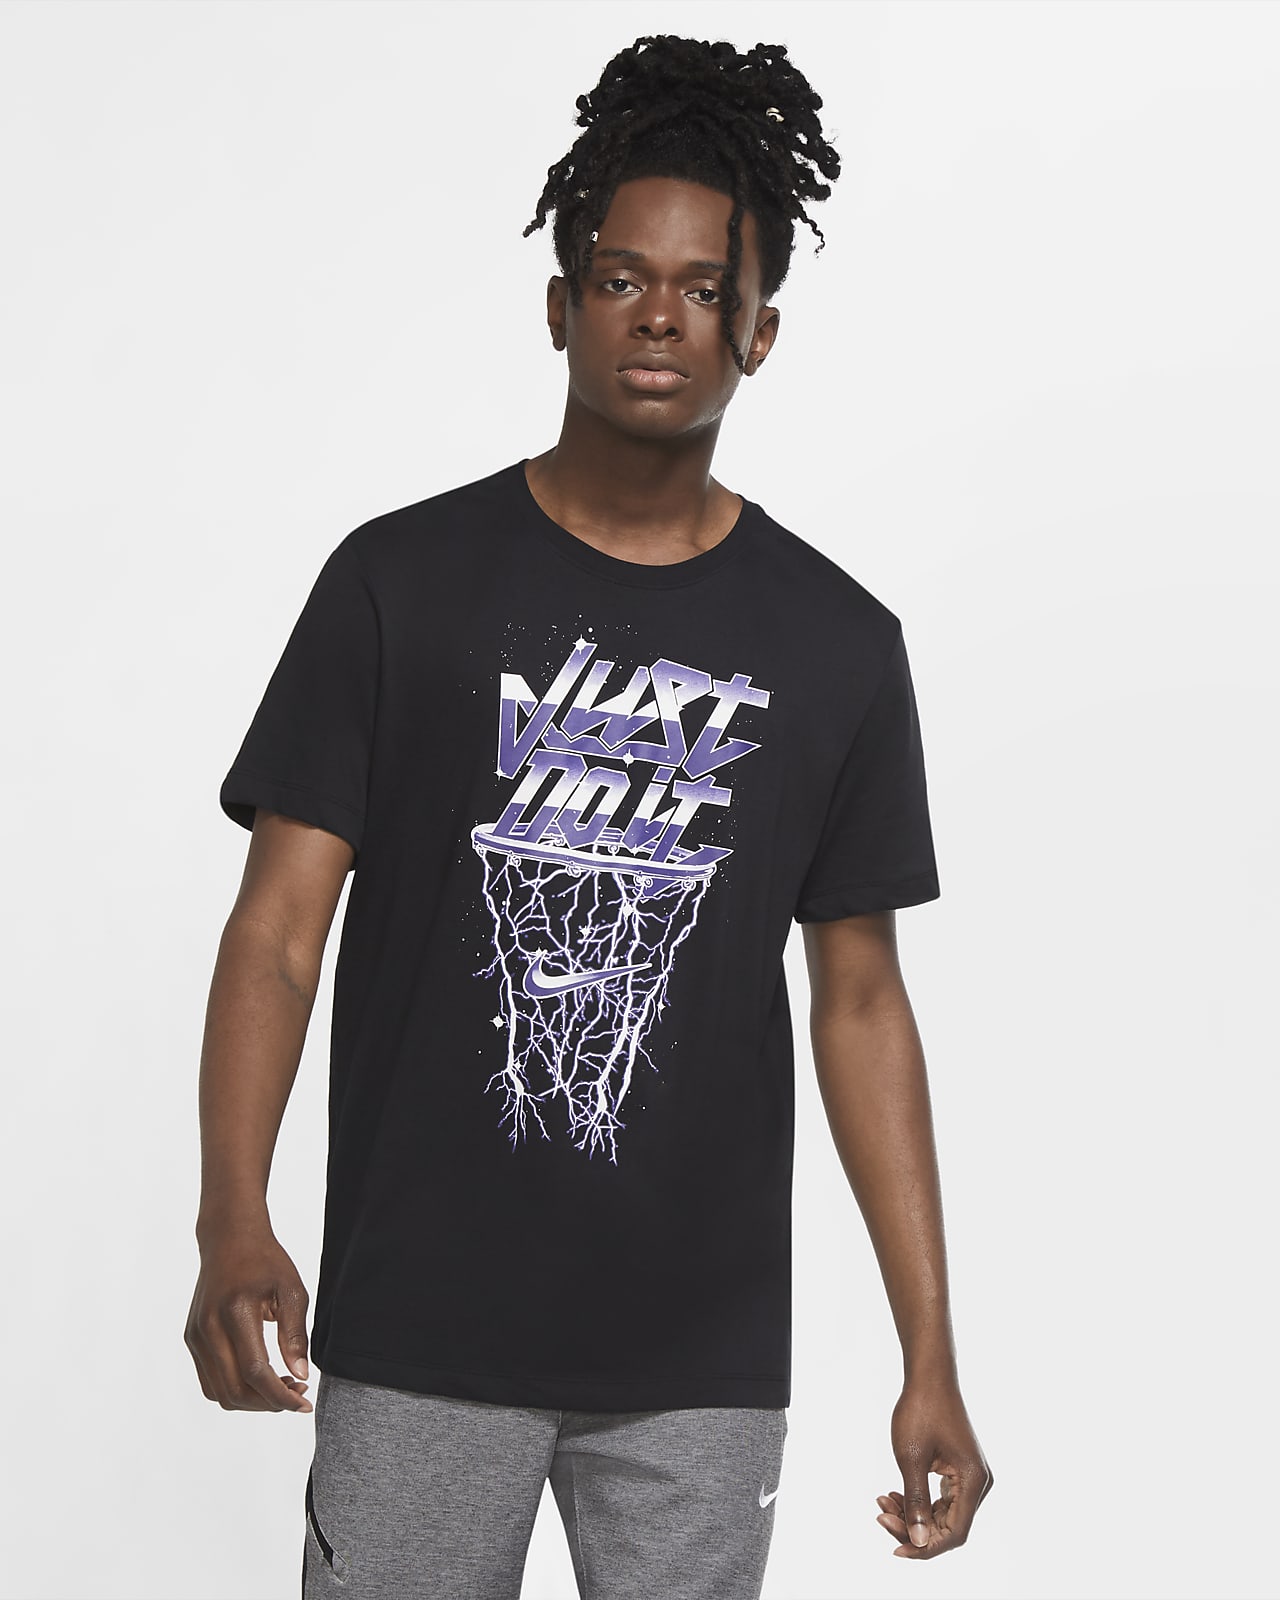 dri fit shirts basketball